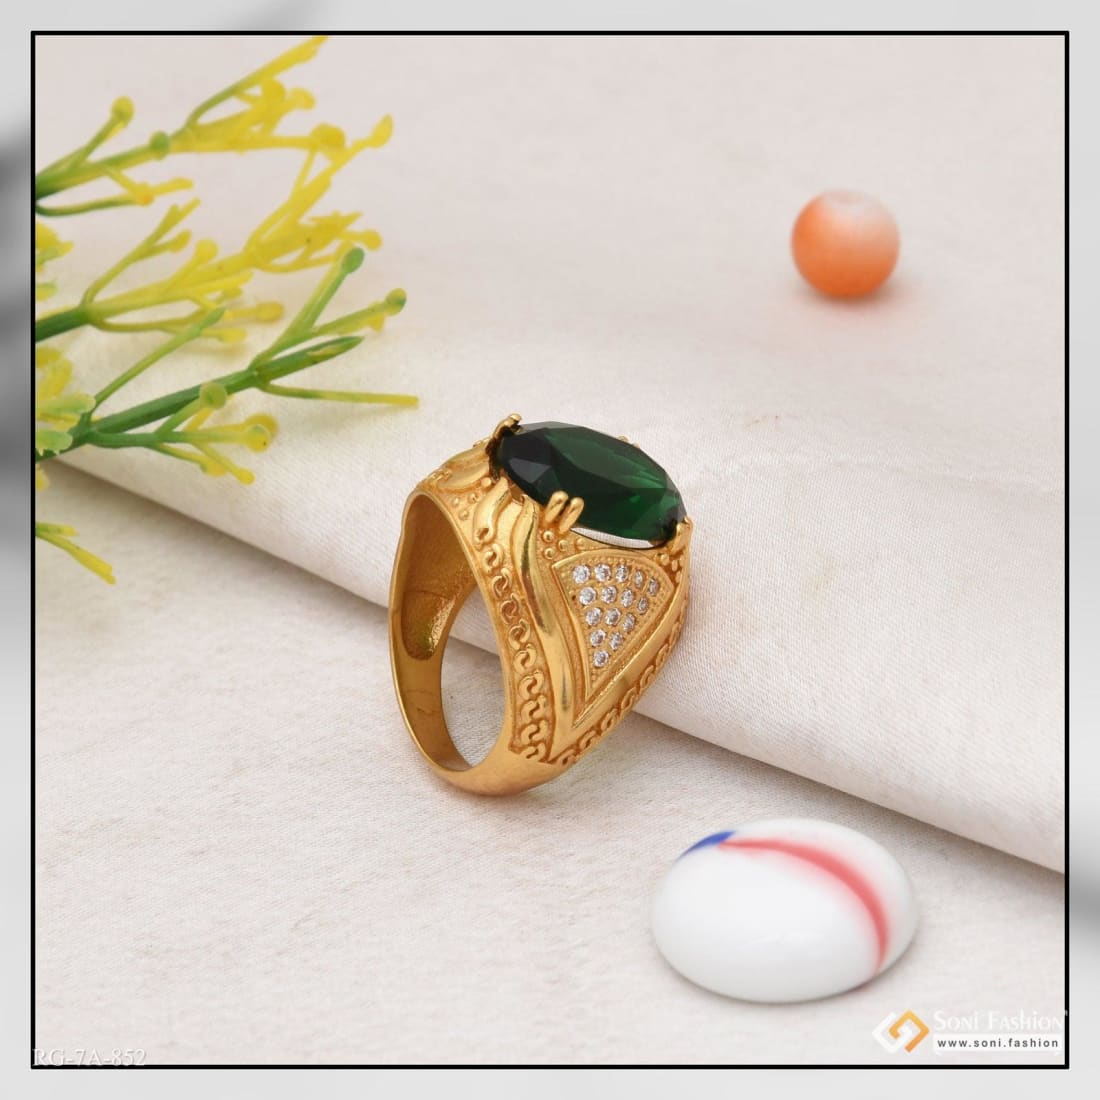 Adjustable Ruby Gemstone Ring, Manik Ring